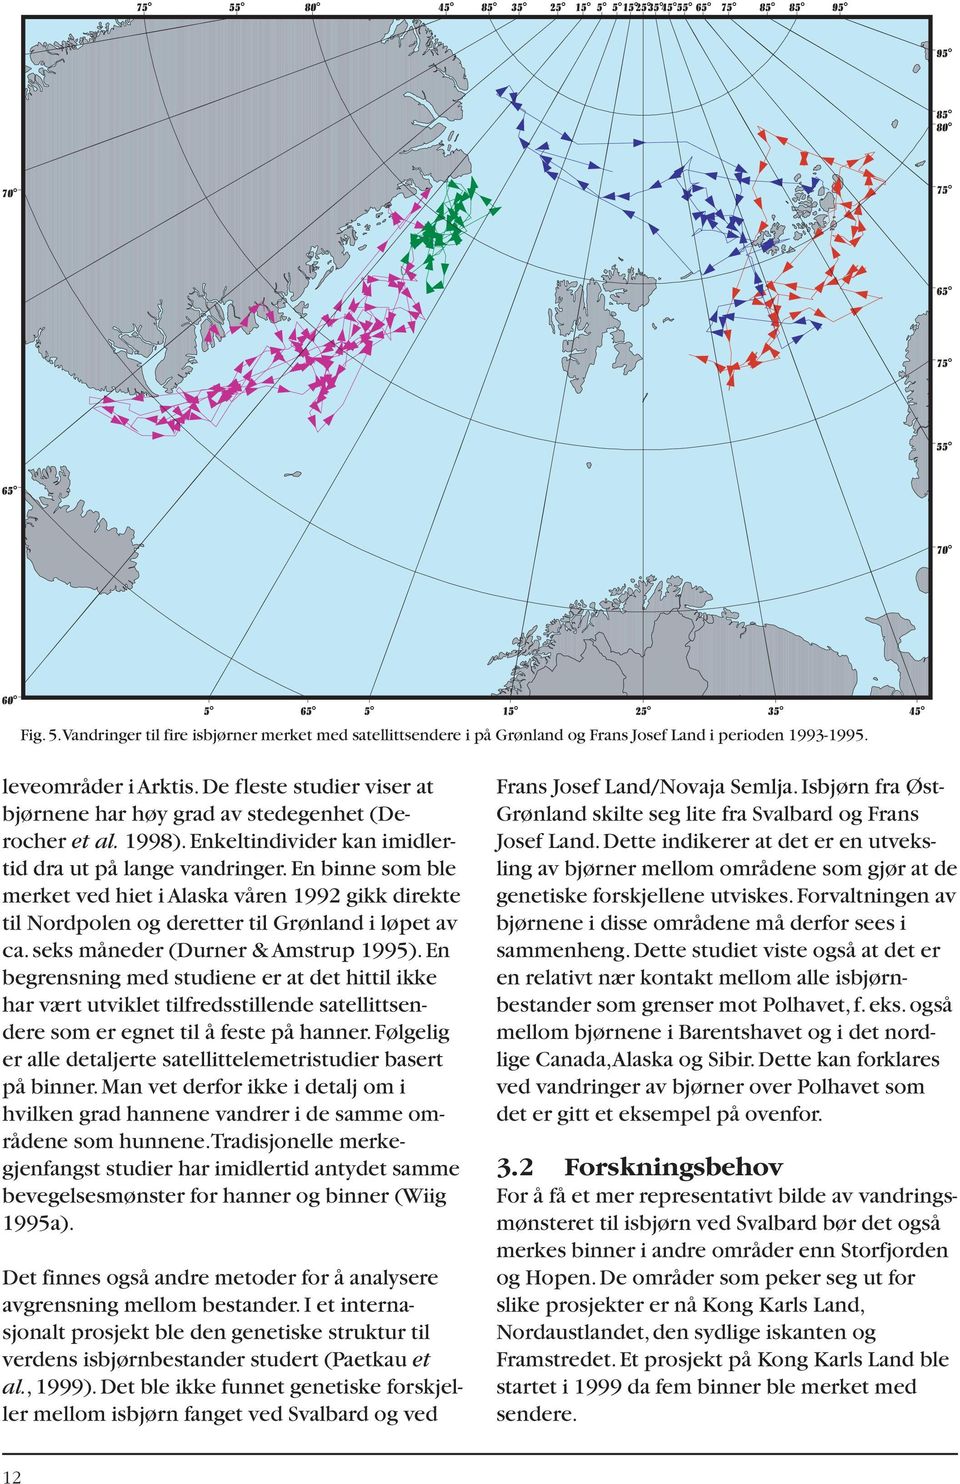 en binne som ble merket ved hiet i Alaska våren 1992 gikk direkte til Nordpolen og deretter til Grønland i løpet av ca.seks måneder (Durner & Amstrup 1995).